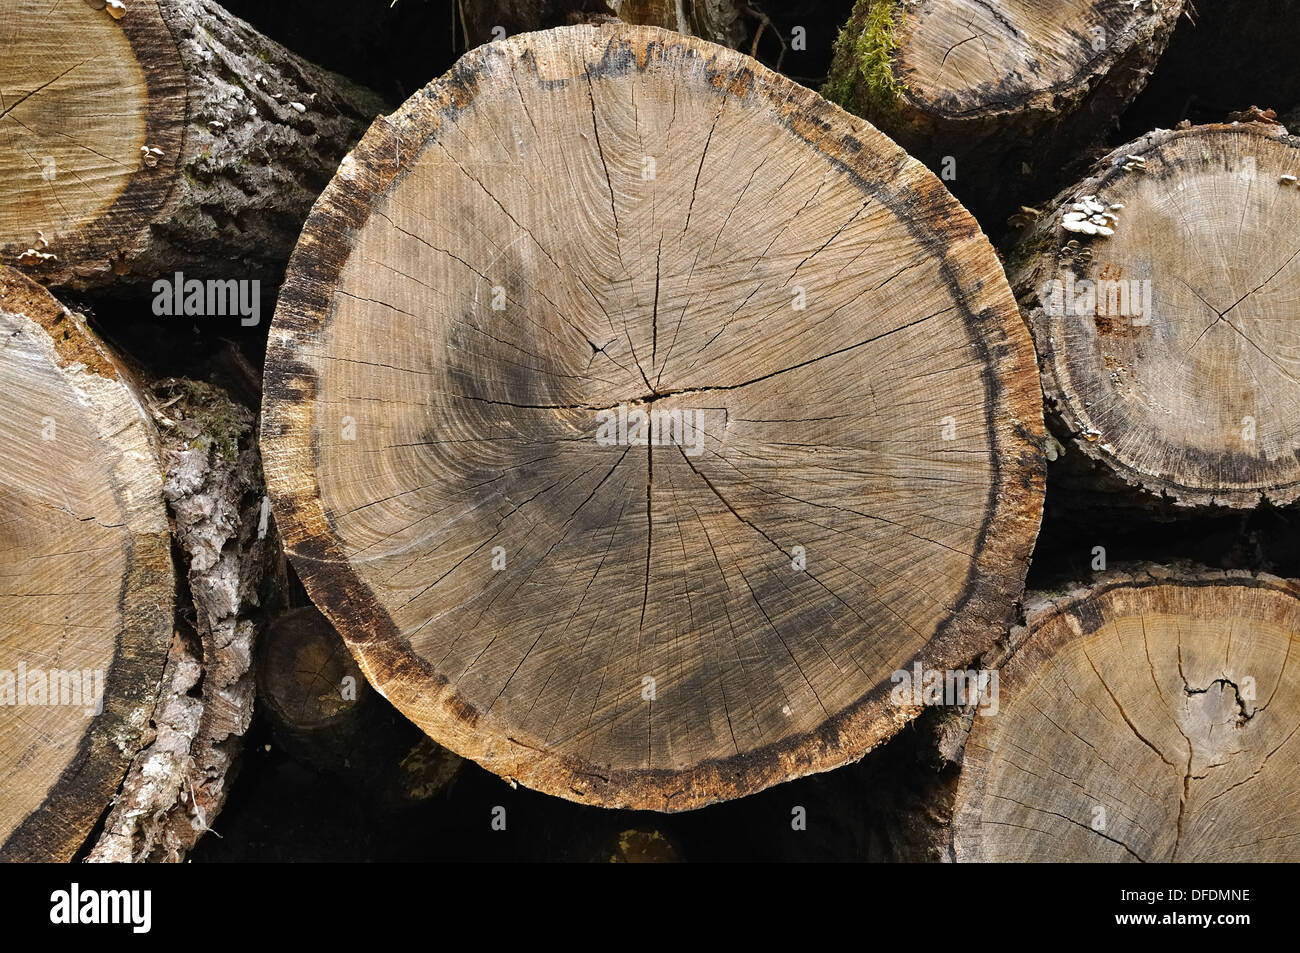 Gros plan sur la coupe d'un tronc d'arbre empilés Banque D'Images